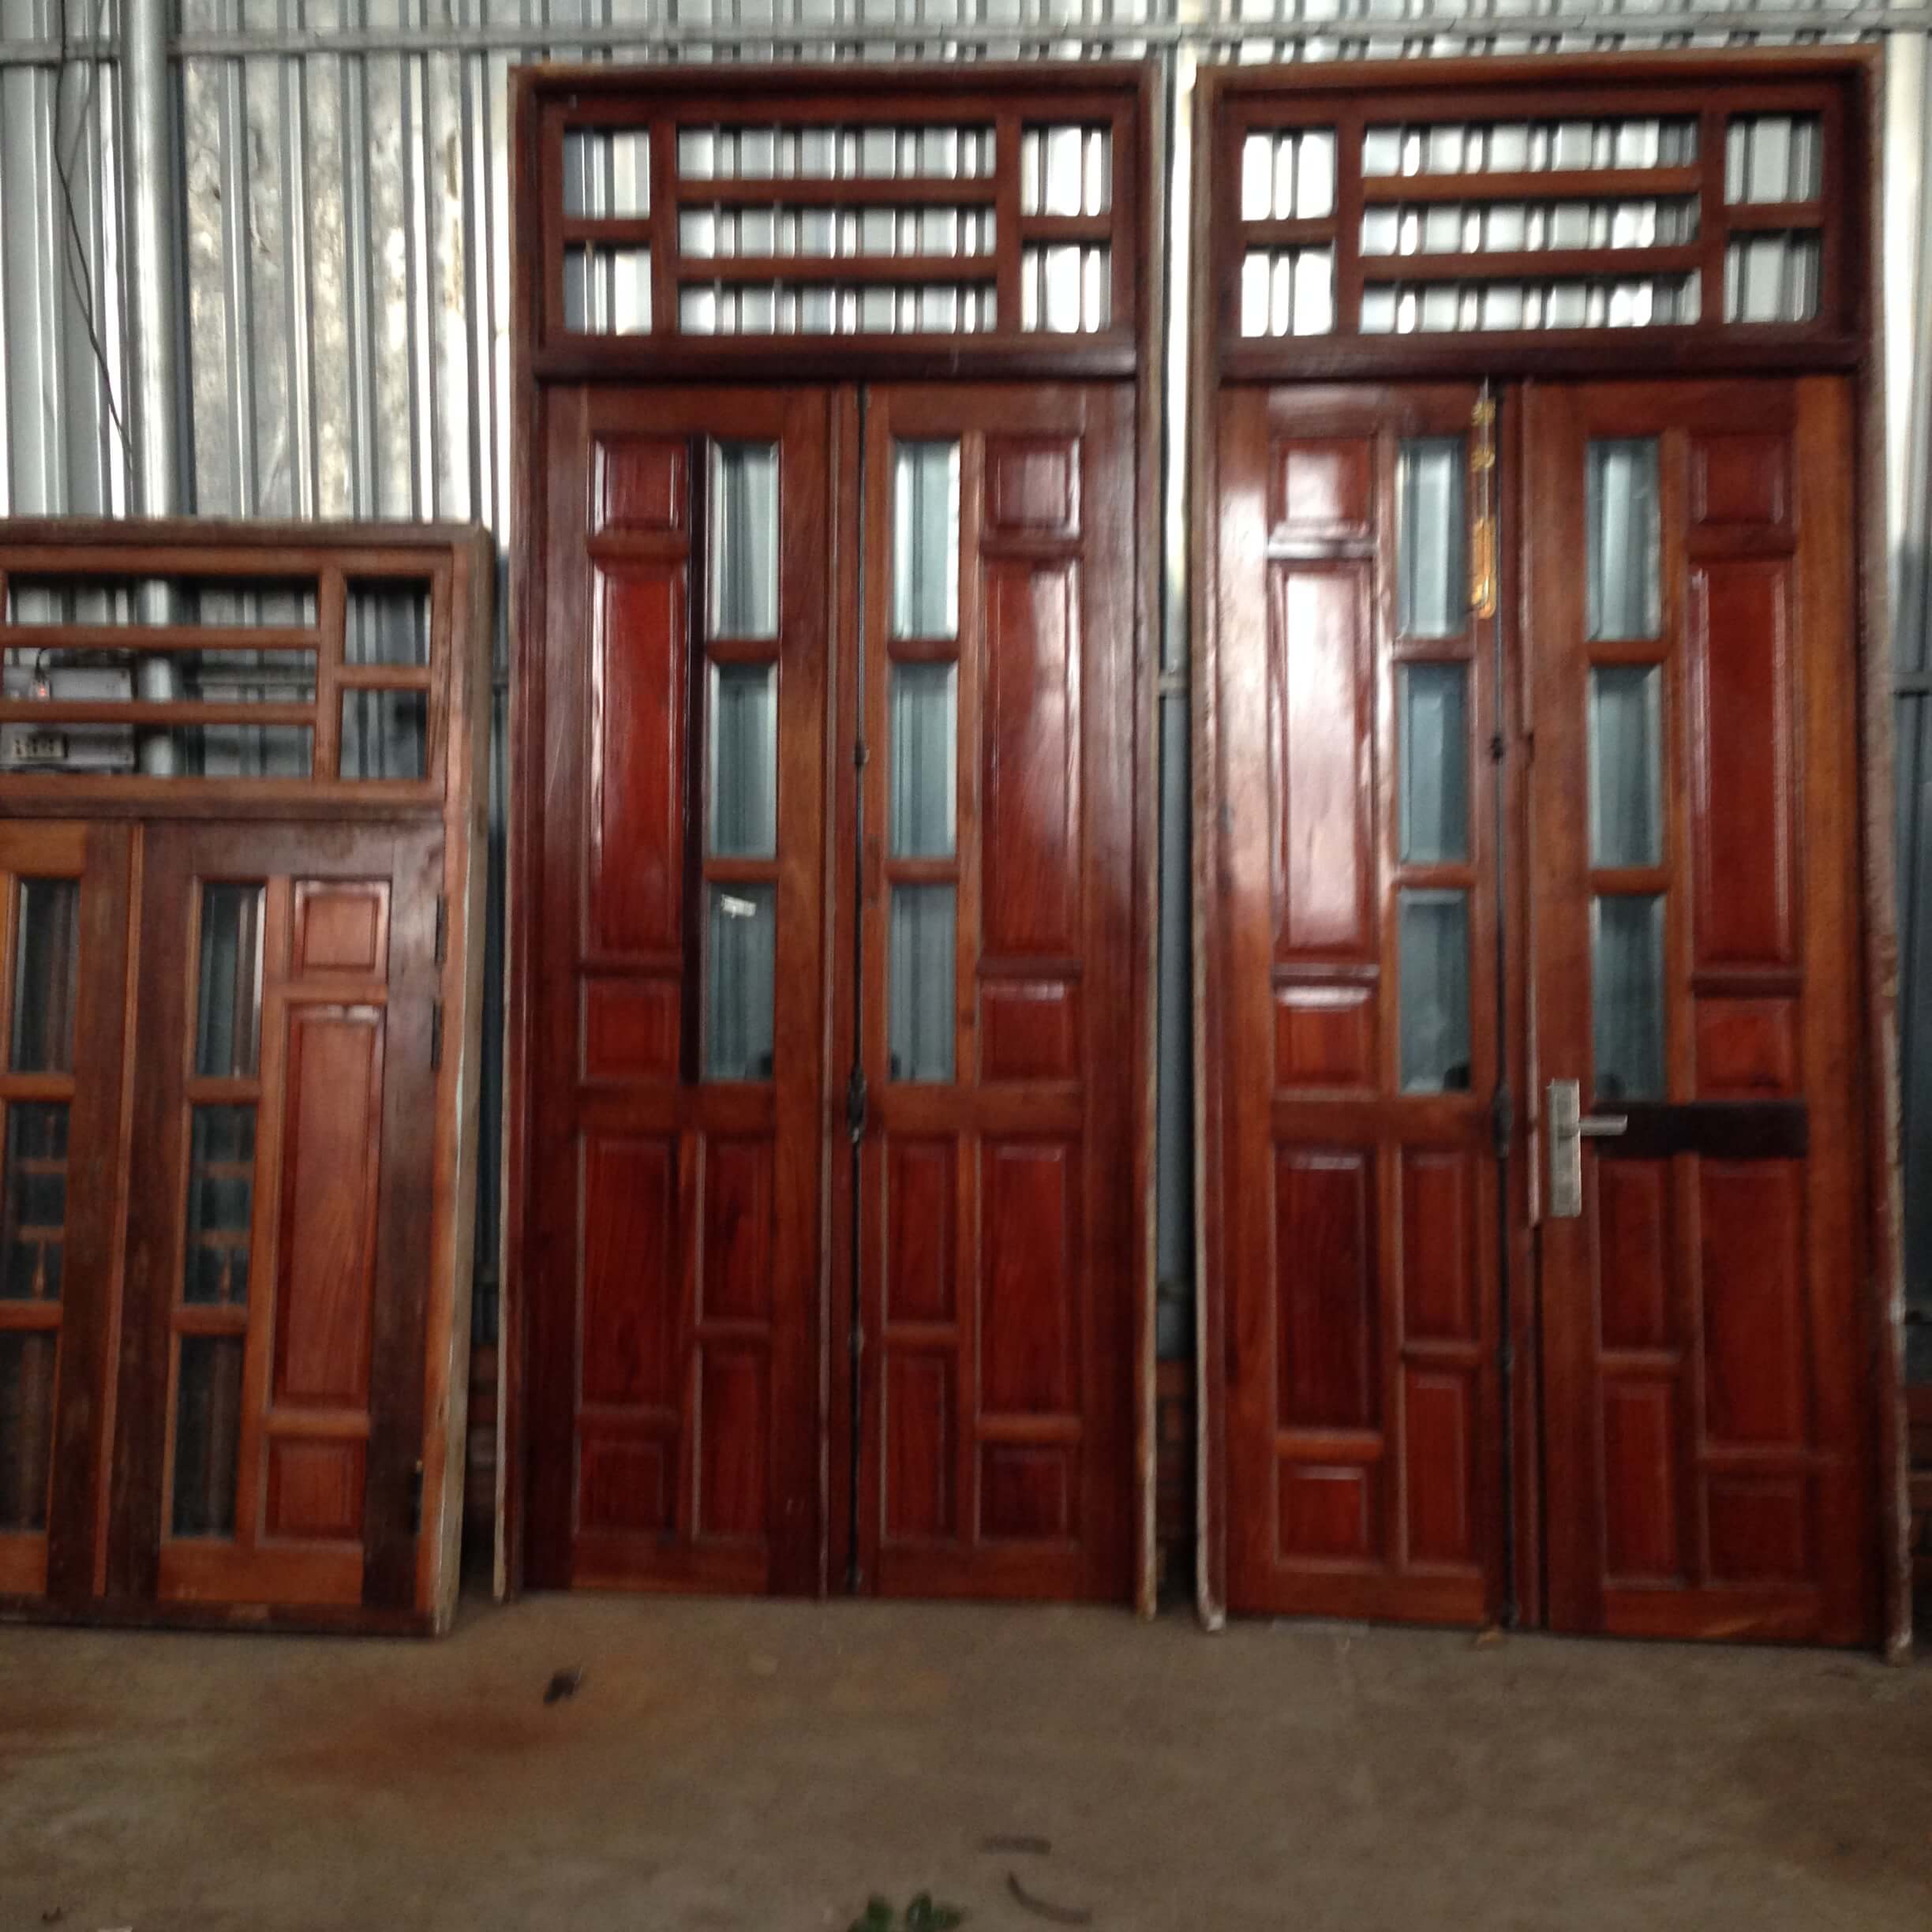 Dù cho không còn được dùng nữa, cửa gỗ cũ TPHCM vẫn mang lại nét đẹp cổ điển và sang trọng cho căn nhà. Nếu bạn đang muốn tái chế lại những cửa gỗ cũ thì đừng ngần ngại liên hệ với các cửa hàng uy tín để được cung cấp sản phẩm chất lượng.